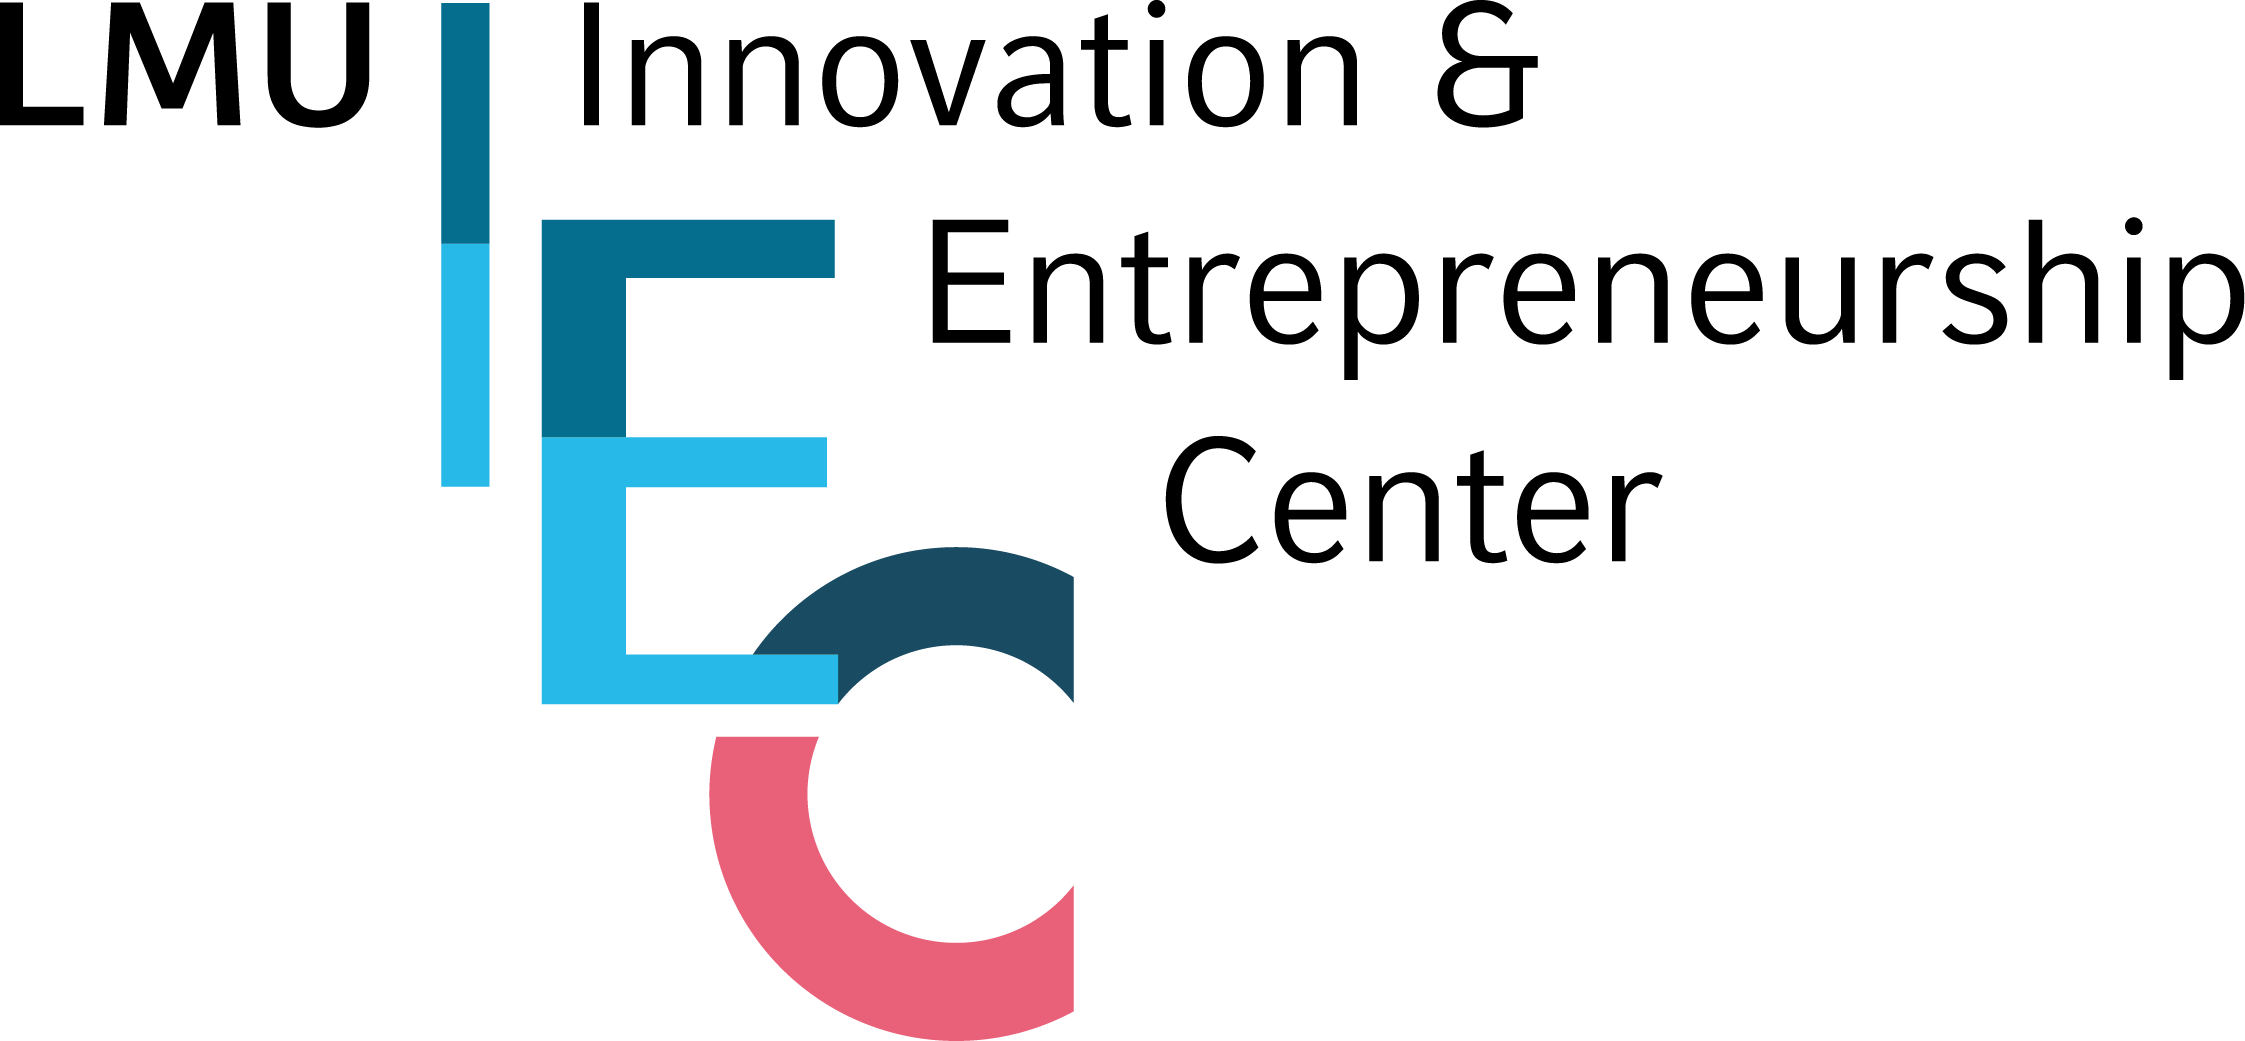 LMU Innovation & Entrepreneurship Center